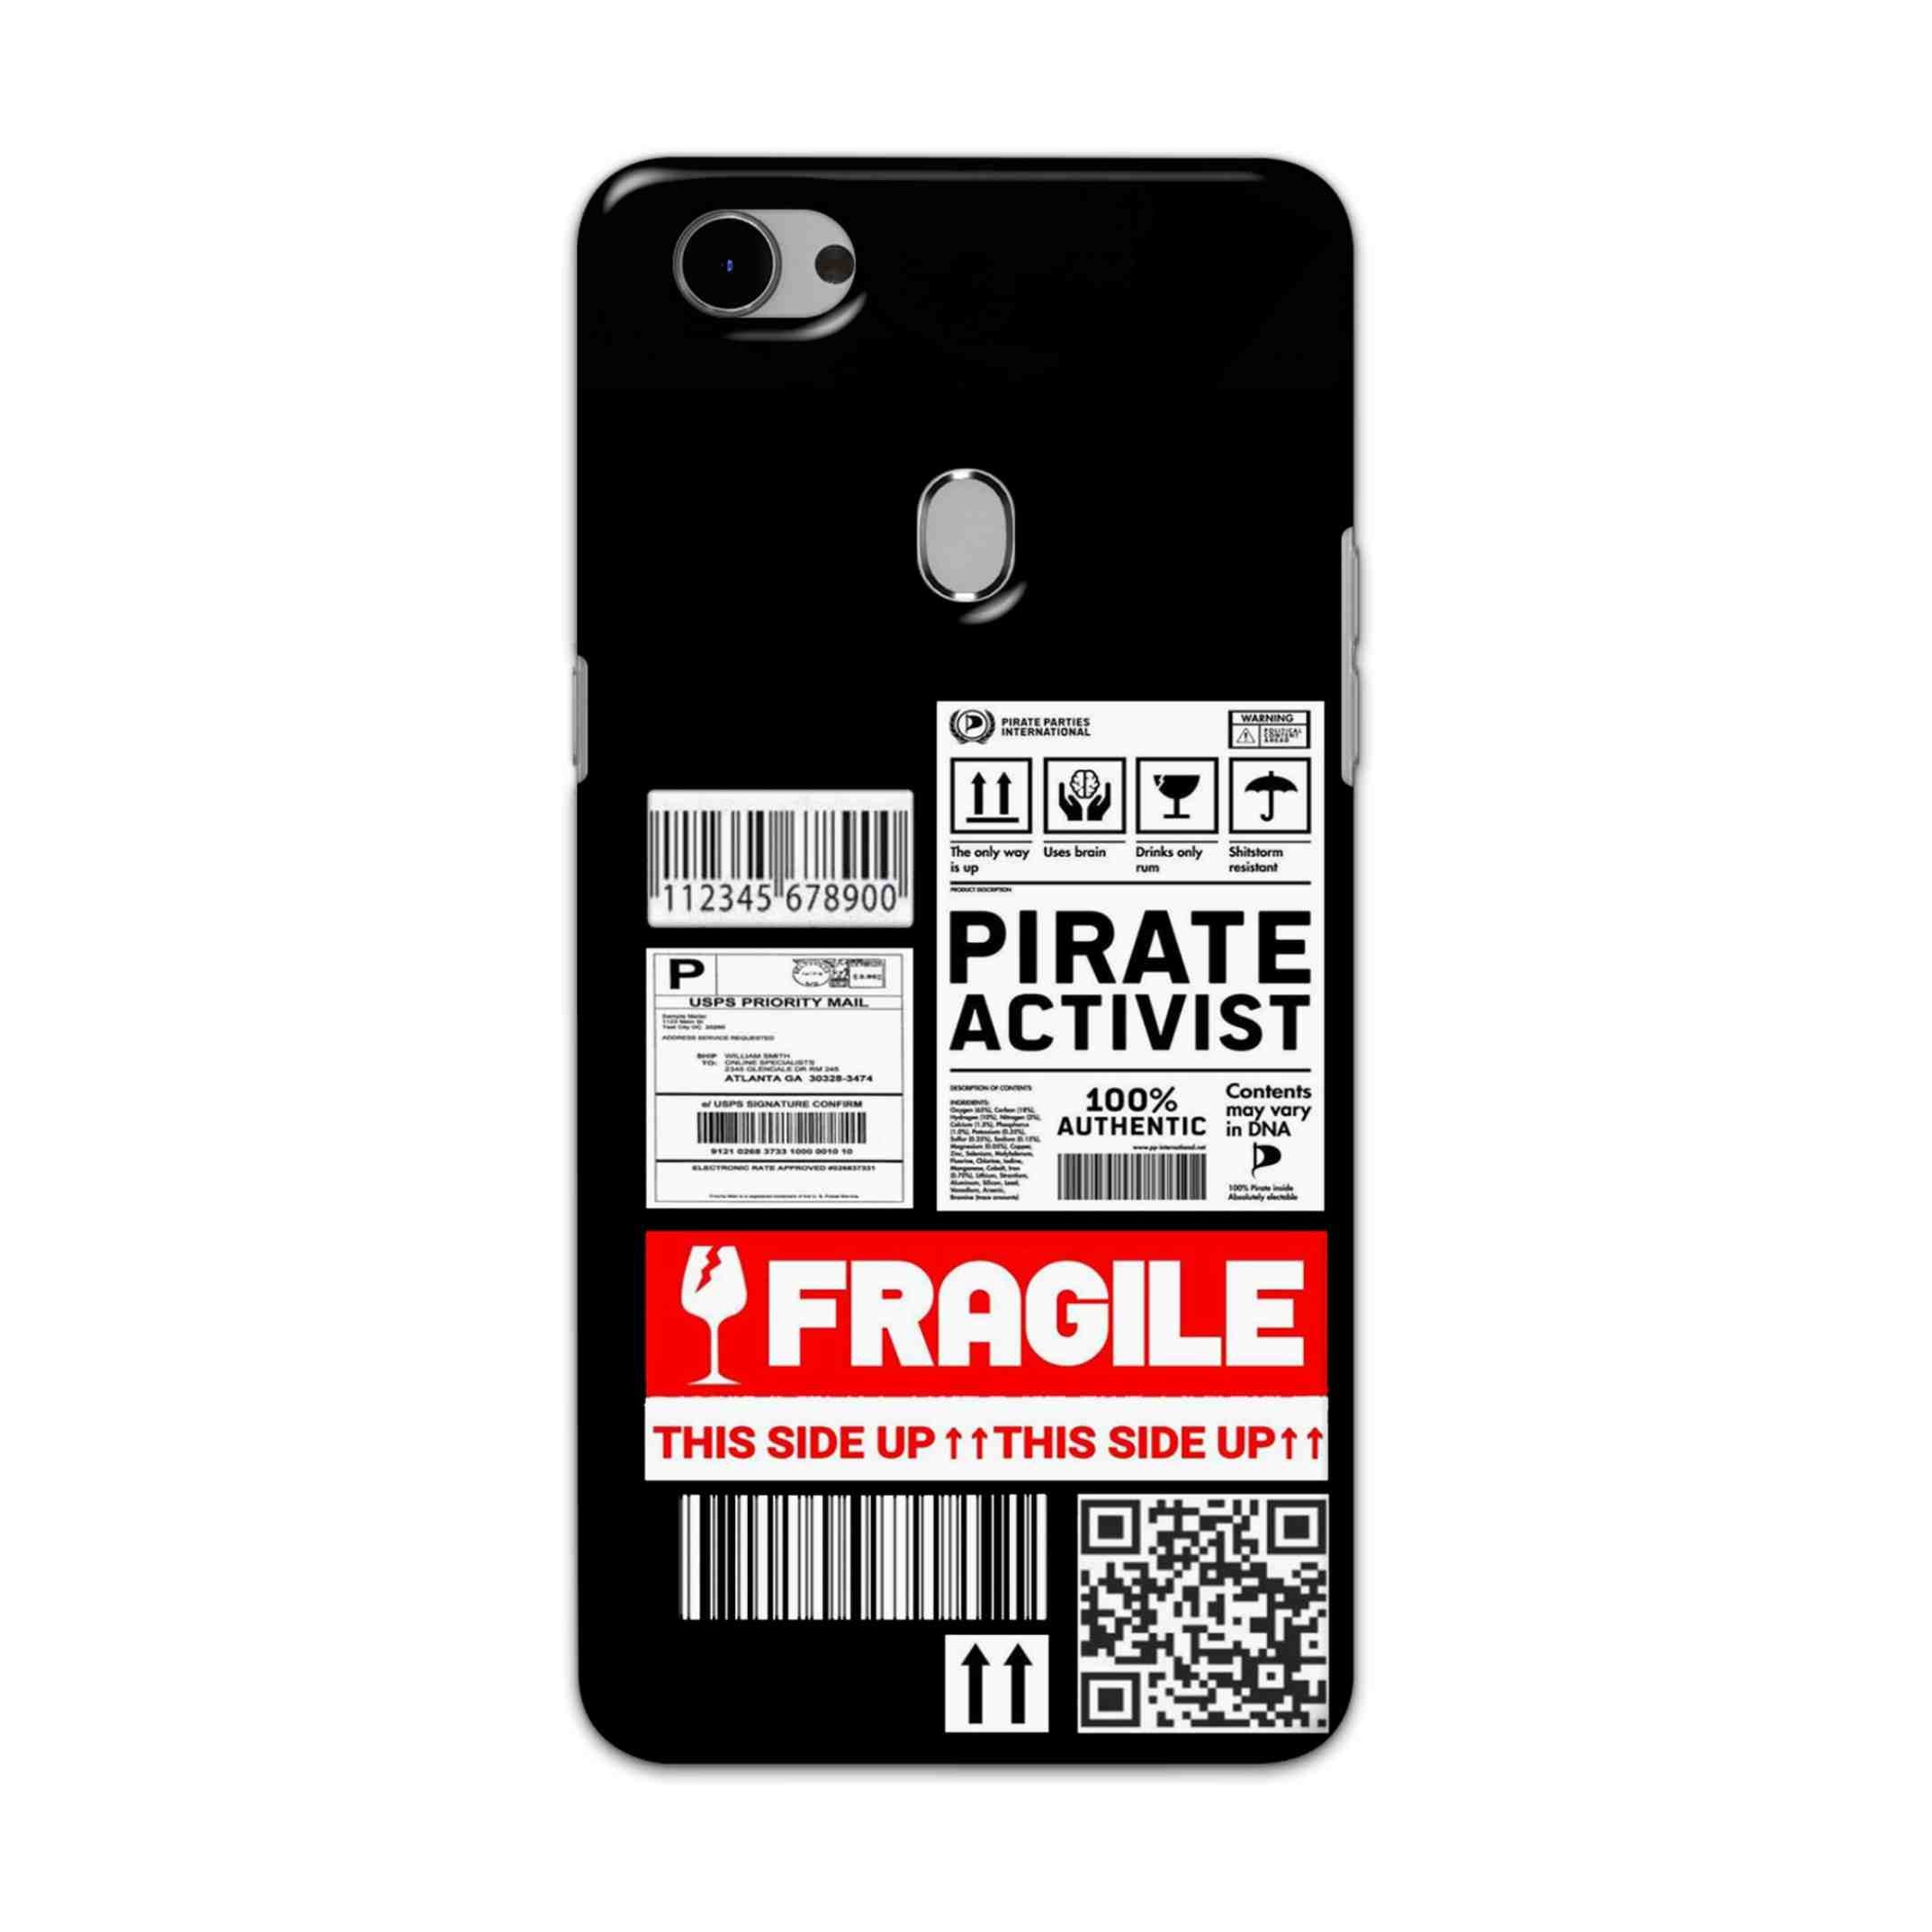 Buy Fragile Hard Back Mobile Phone Case Cover For Oppo F7 Online